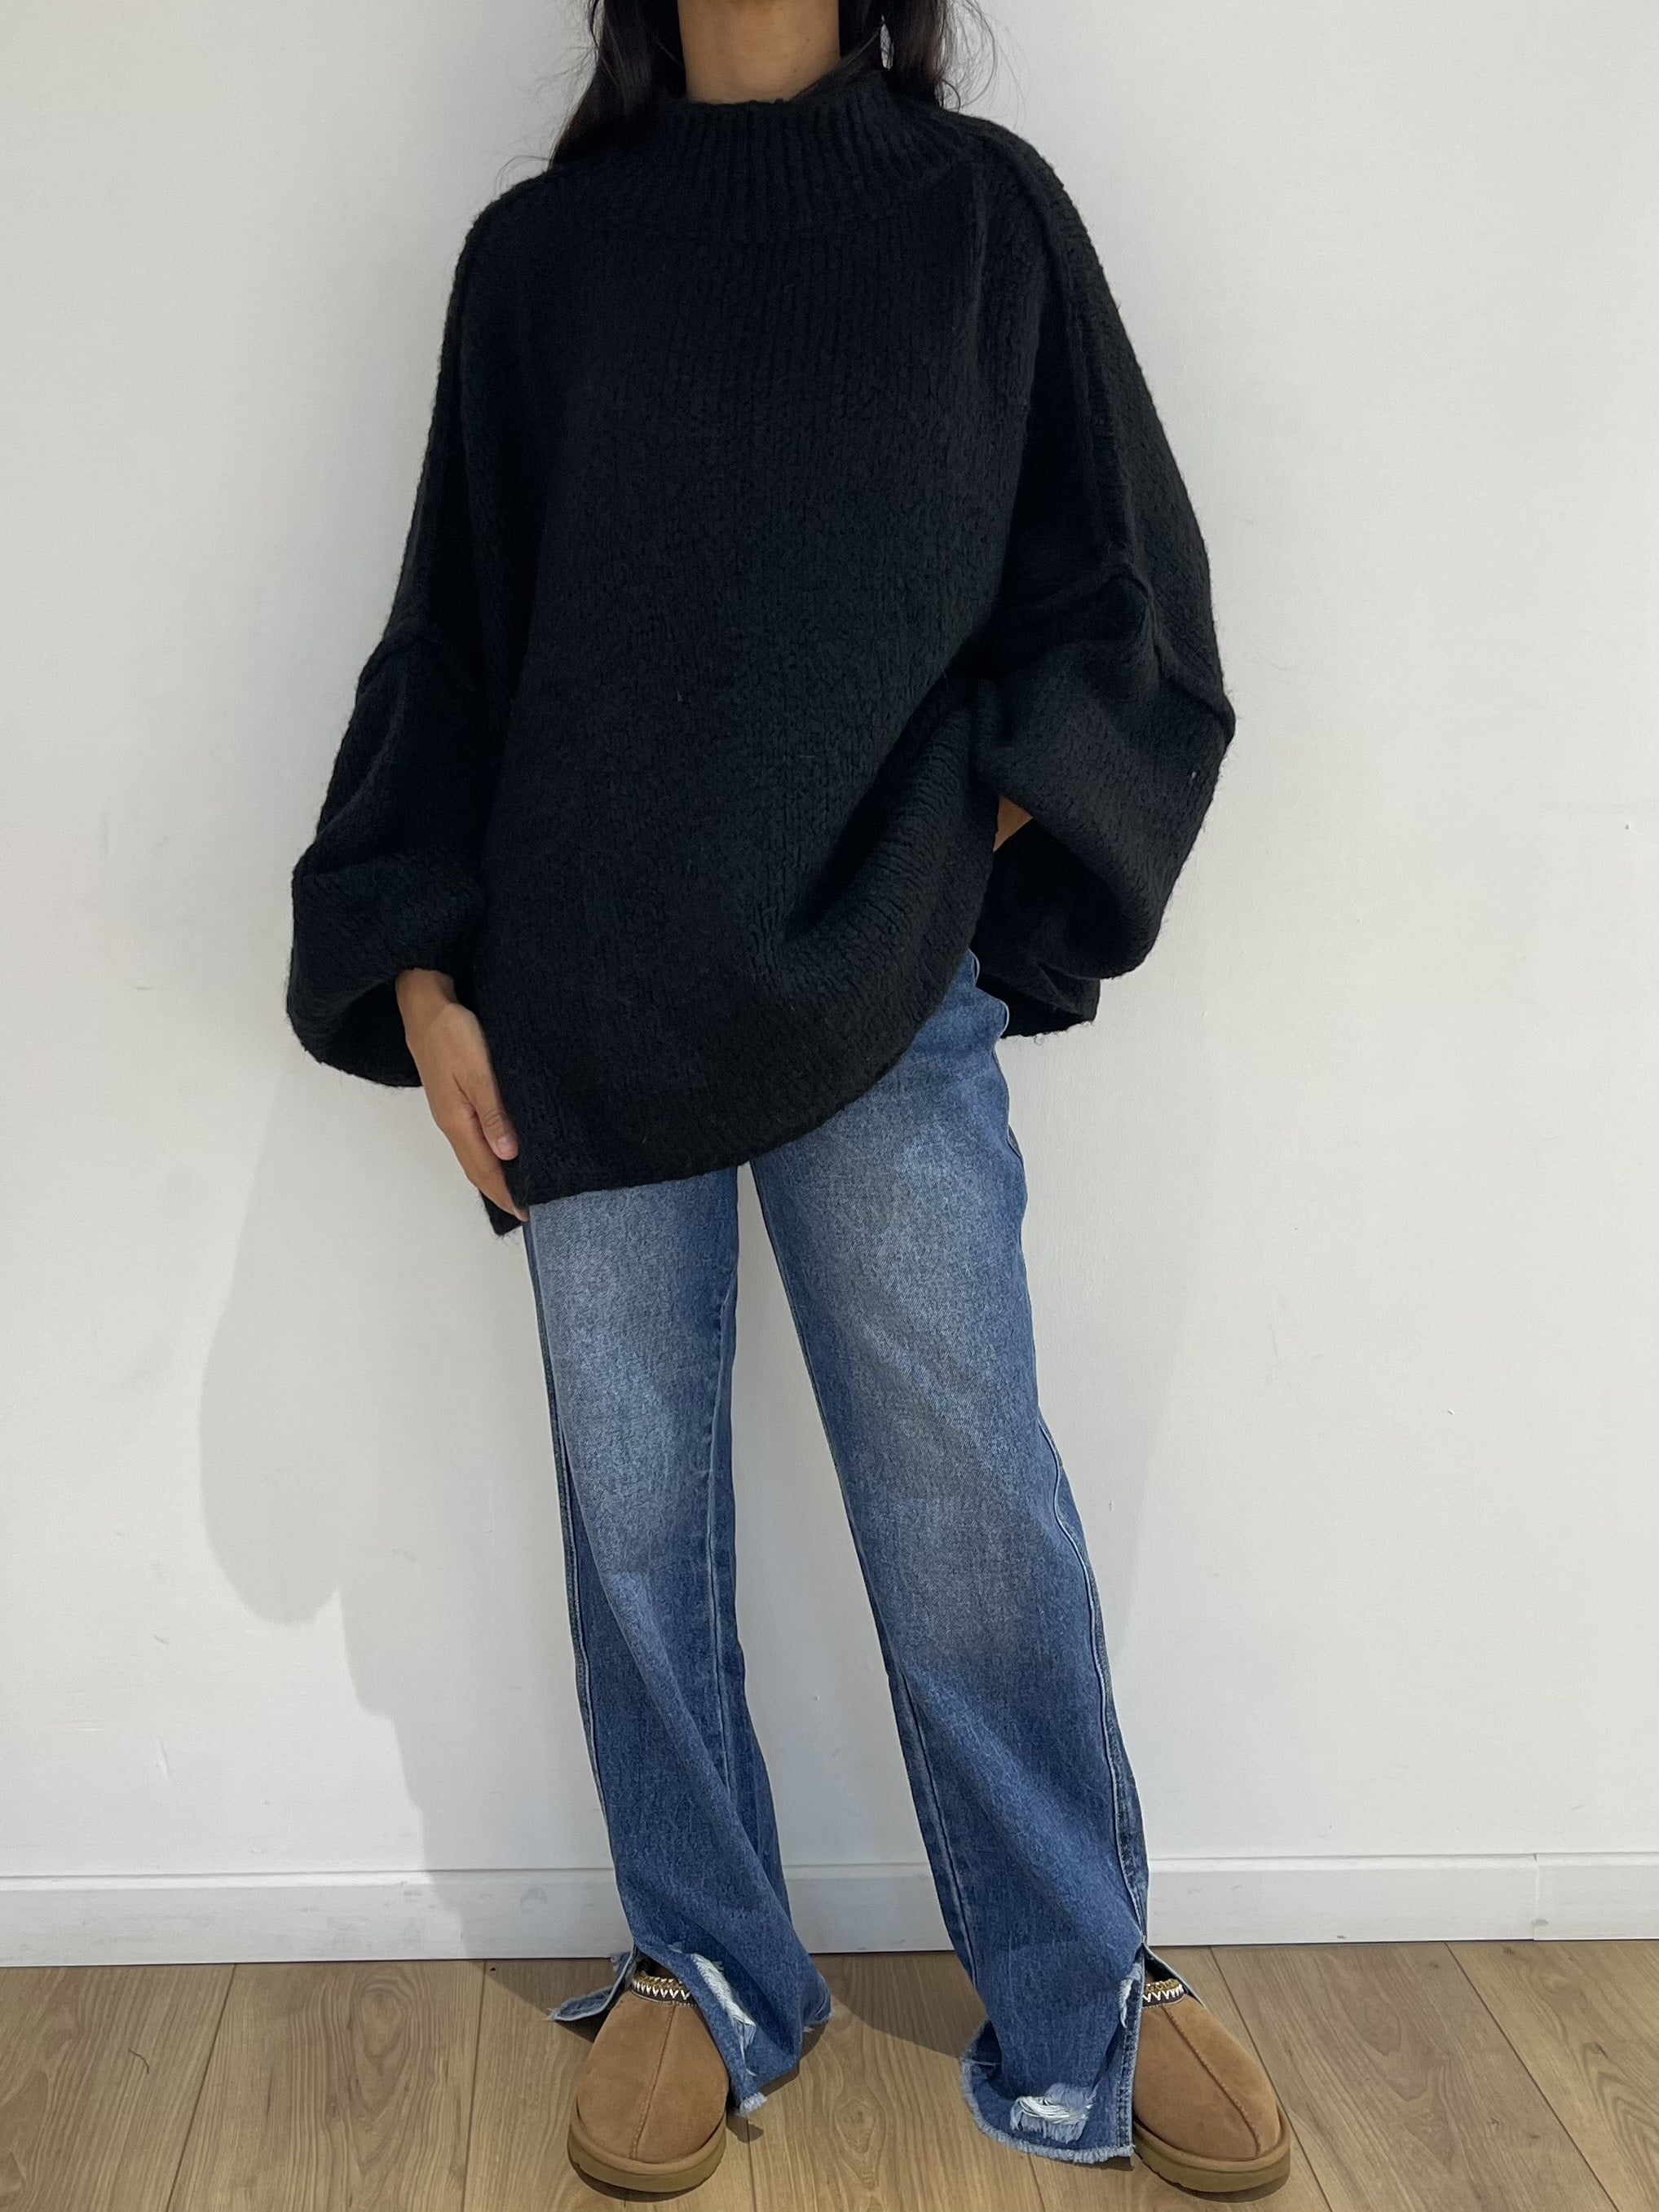 Élégance décontractée avec pull oversize en laine noire et jean